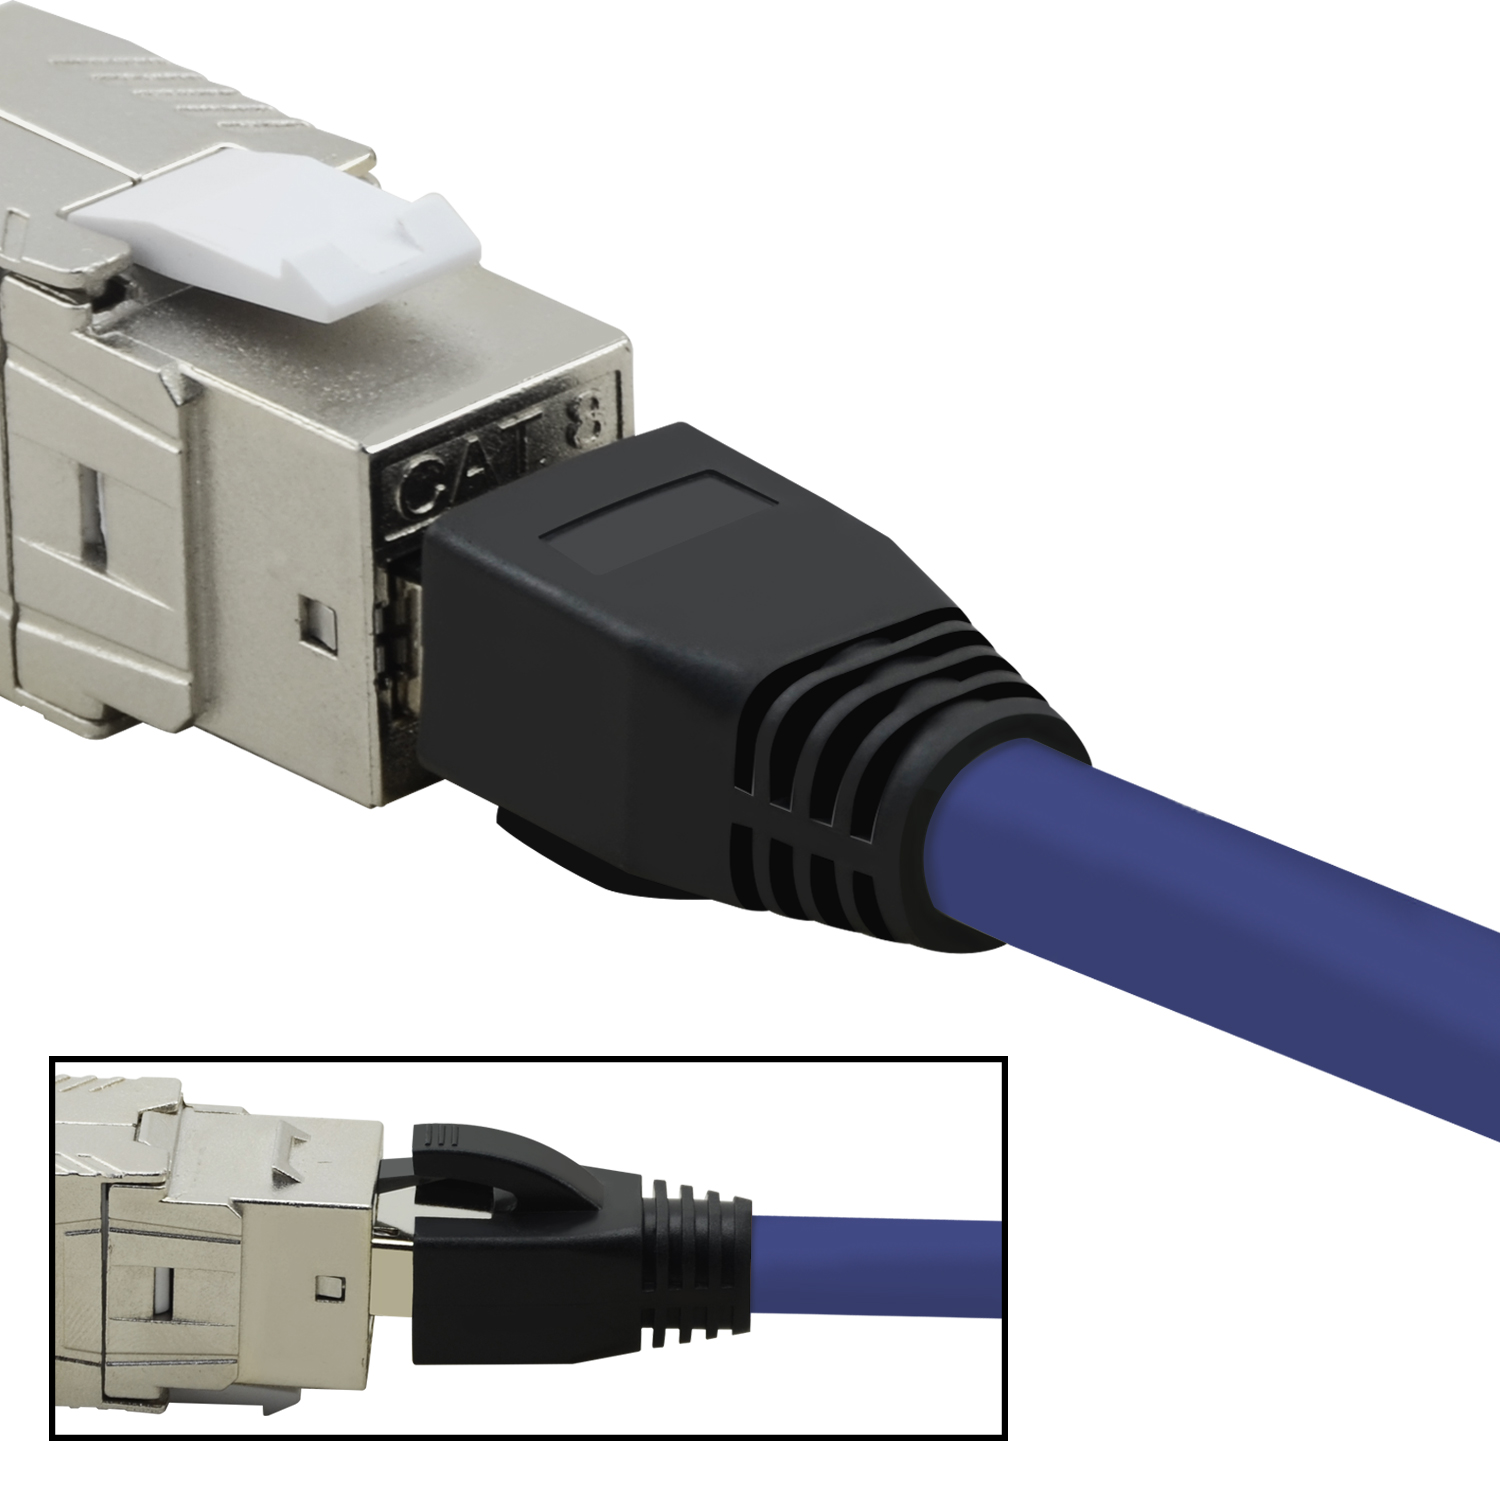 1,5m Netzwerkkabel violett, S/FTP 5er Netzwerkkabel, / 40 Pack TPFNET 1,5 GBit, m Patchkabel